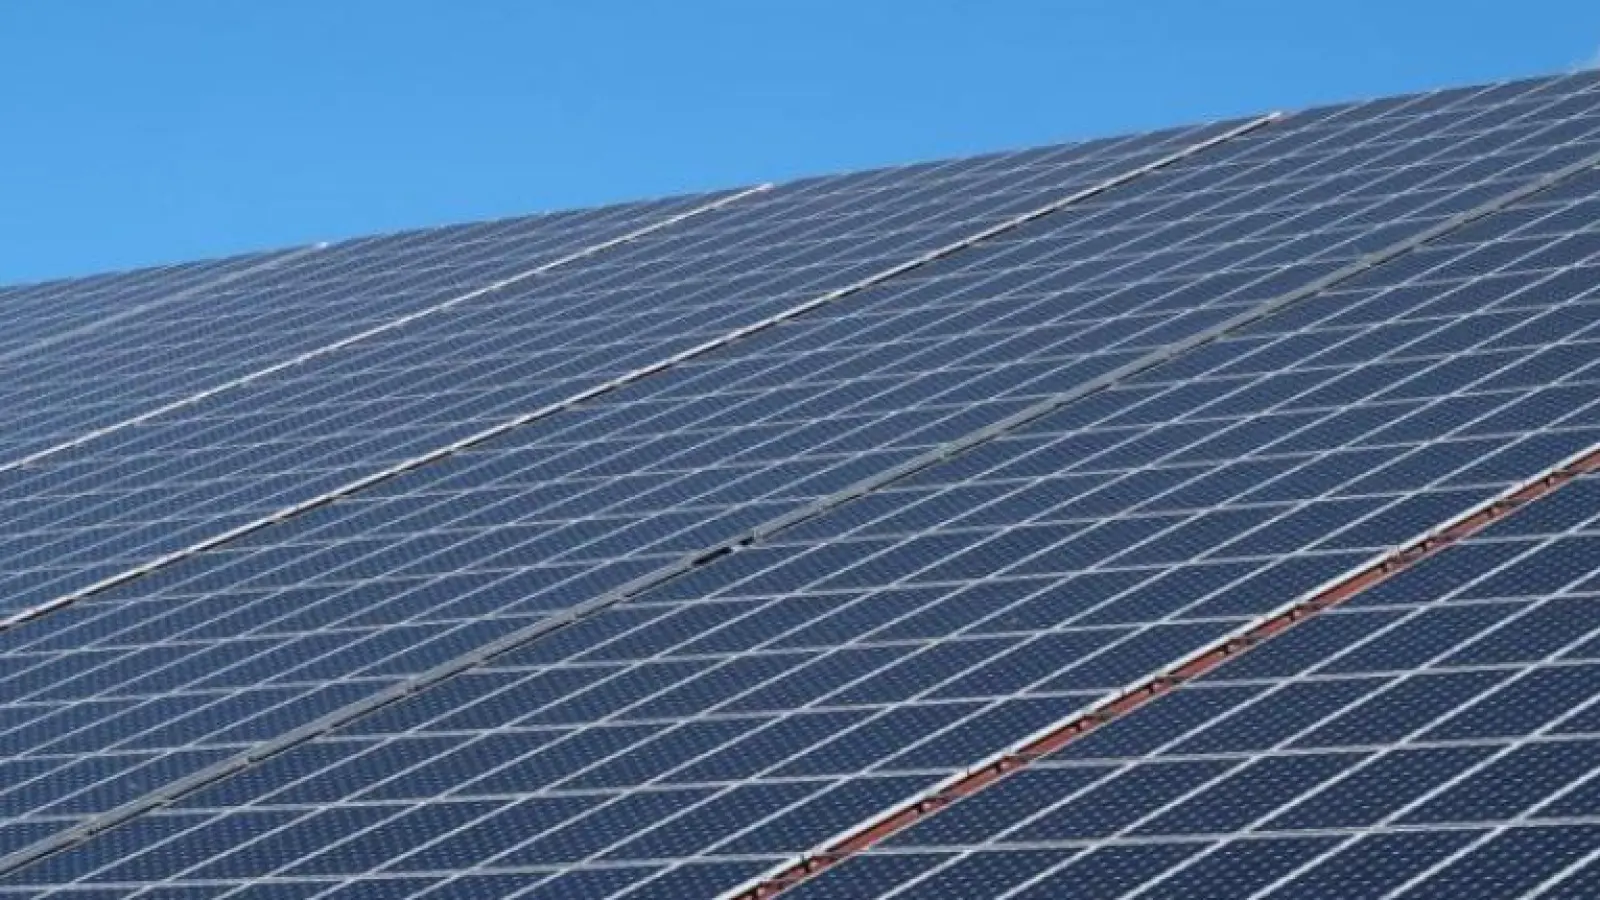 Gelten soll die Solarpflicht auf Dächern laut Beschlussvorlage des Stadtrats künftig für Neubauprojekte. (Foto: Ute Blauert)